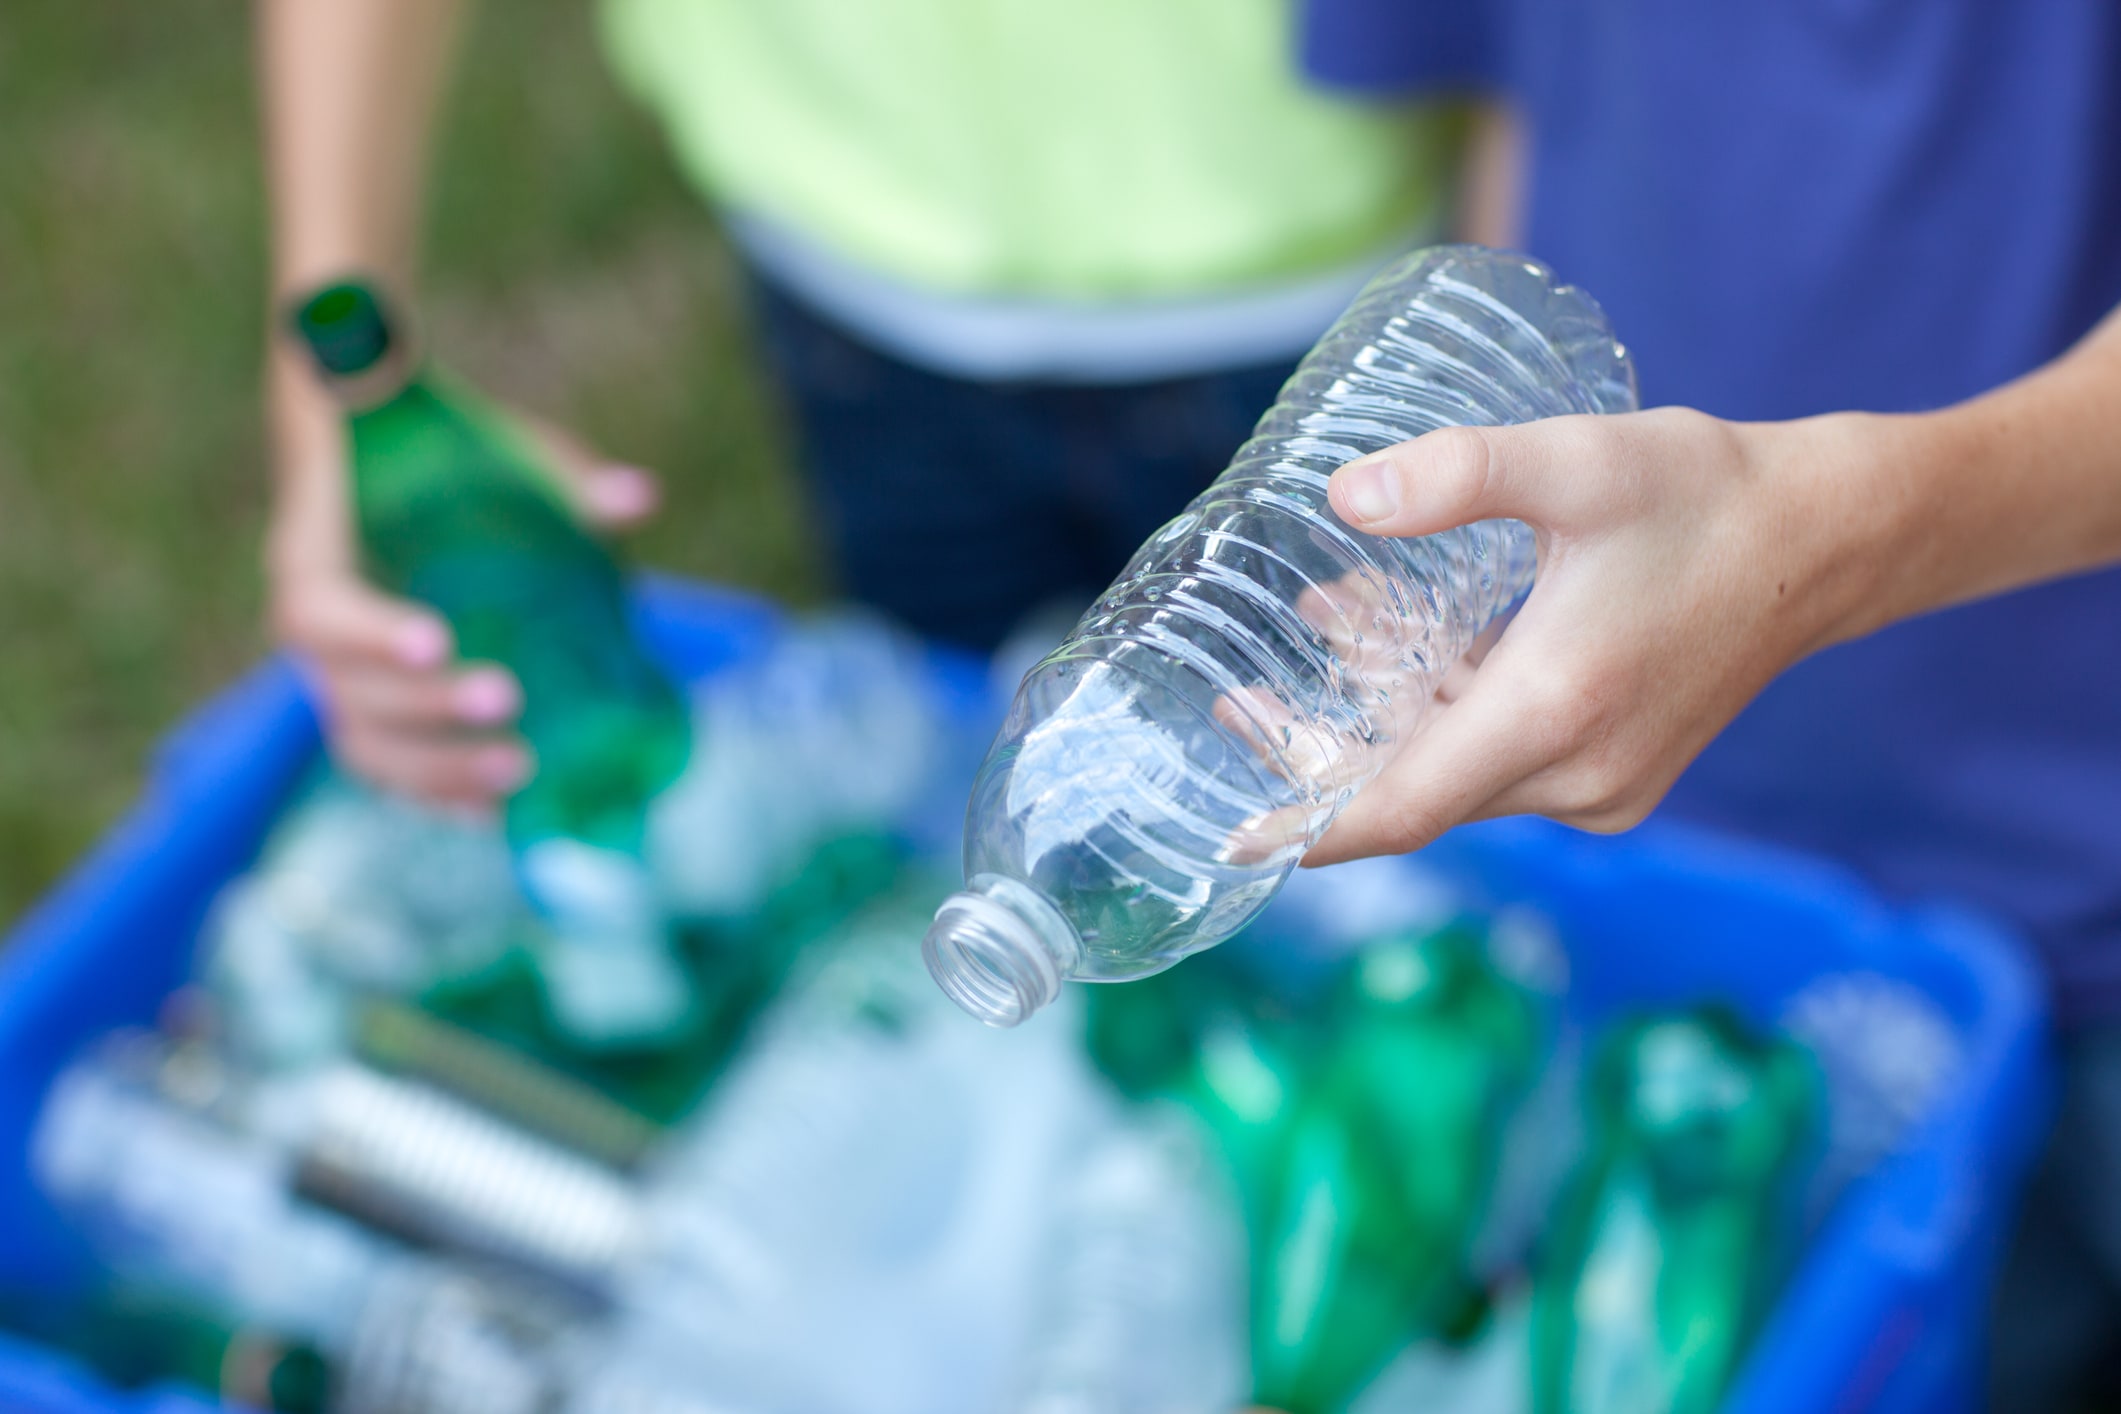 Une personne tient dans sa main une bouteille en verre vert tandis qu’une autre tient une bouteille en plastique transparent. Elles placent les bouteilles dans un bac de recyclage.